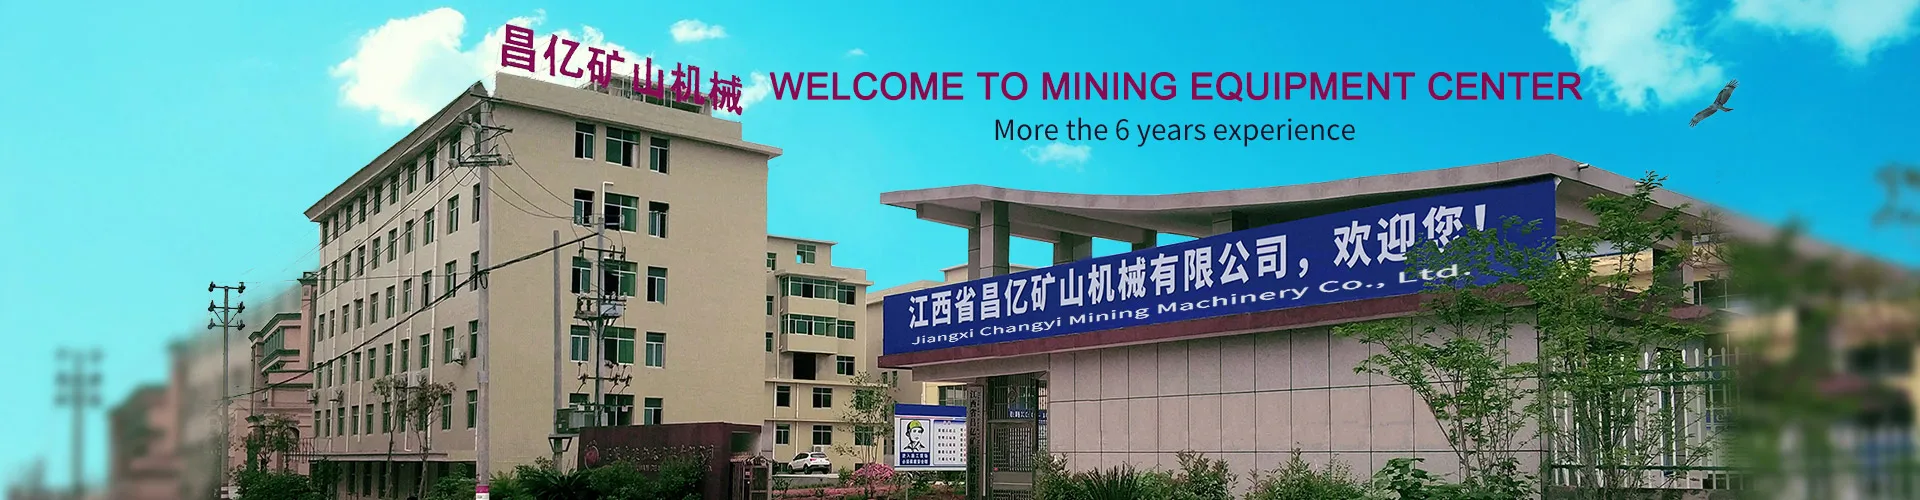 Jiangxi Changyi Mining Machinery Co., Ltd.